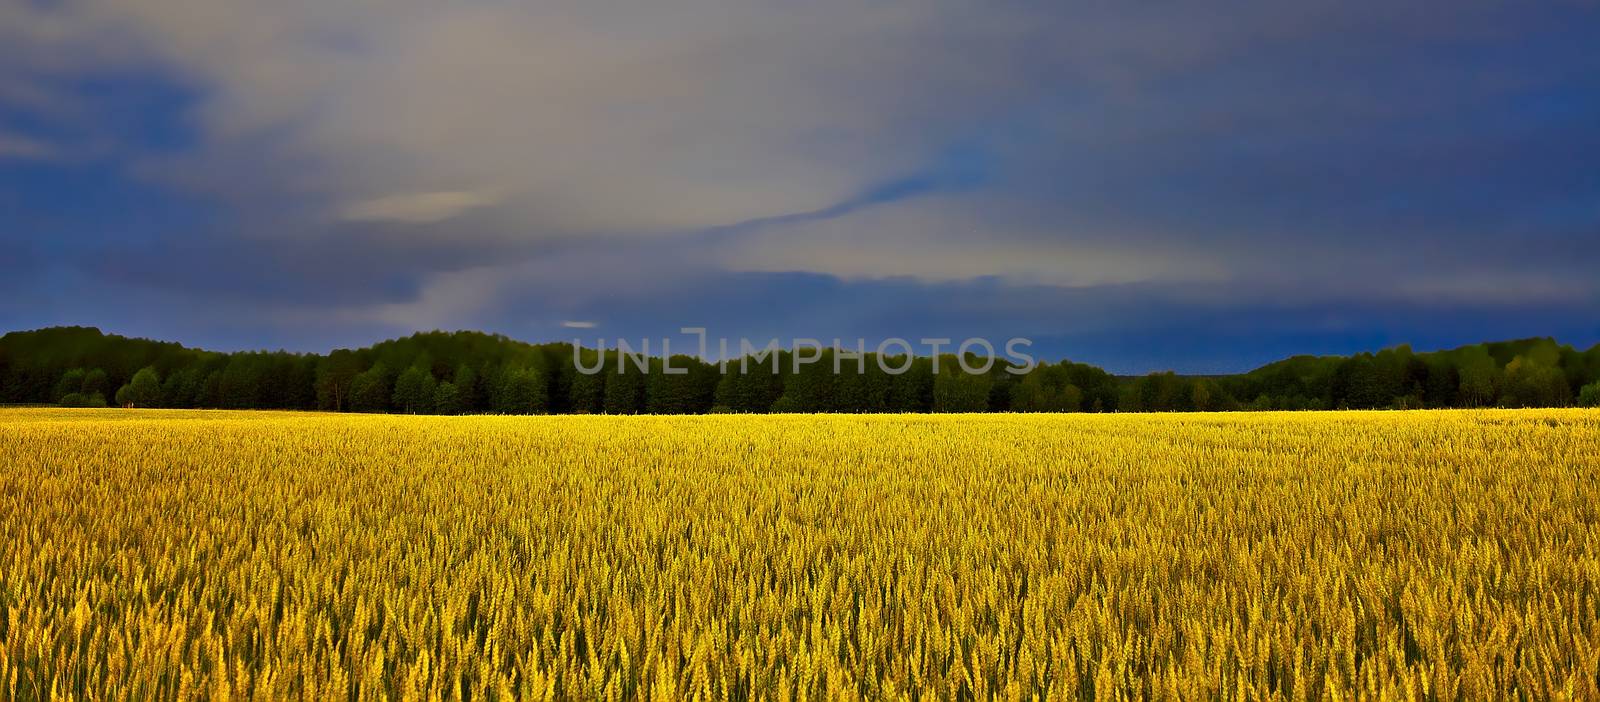 Wide long exposure photo of golden crop field under dark blue night sky.